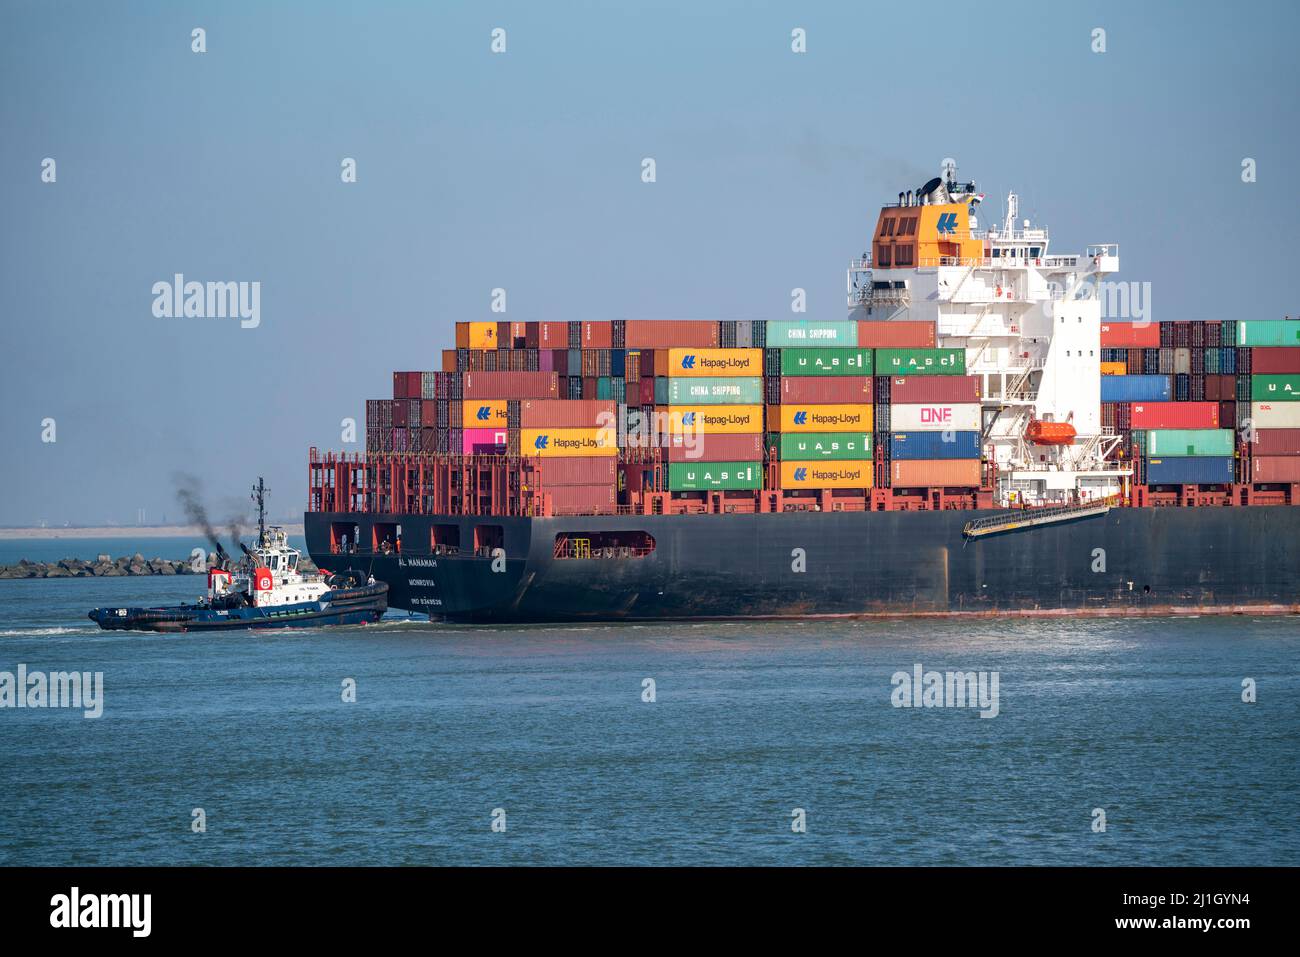 Das Containerschiff Al Manamah, im Besitz von Hapag-Lloyd, befindet sich am Hafeneingang des Tiefseehafens Maasvlakte 2, dem Seehafen von Rotterdam, Niederlande Stockfoto